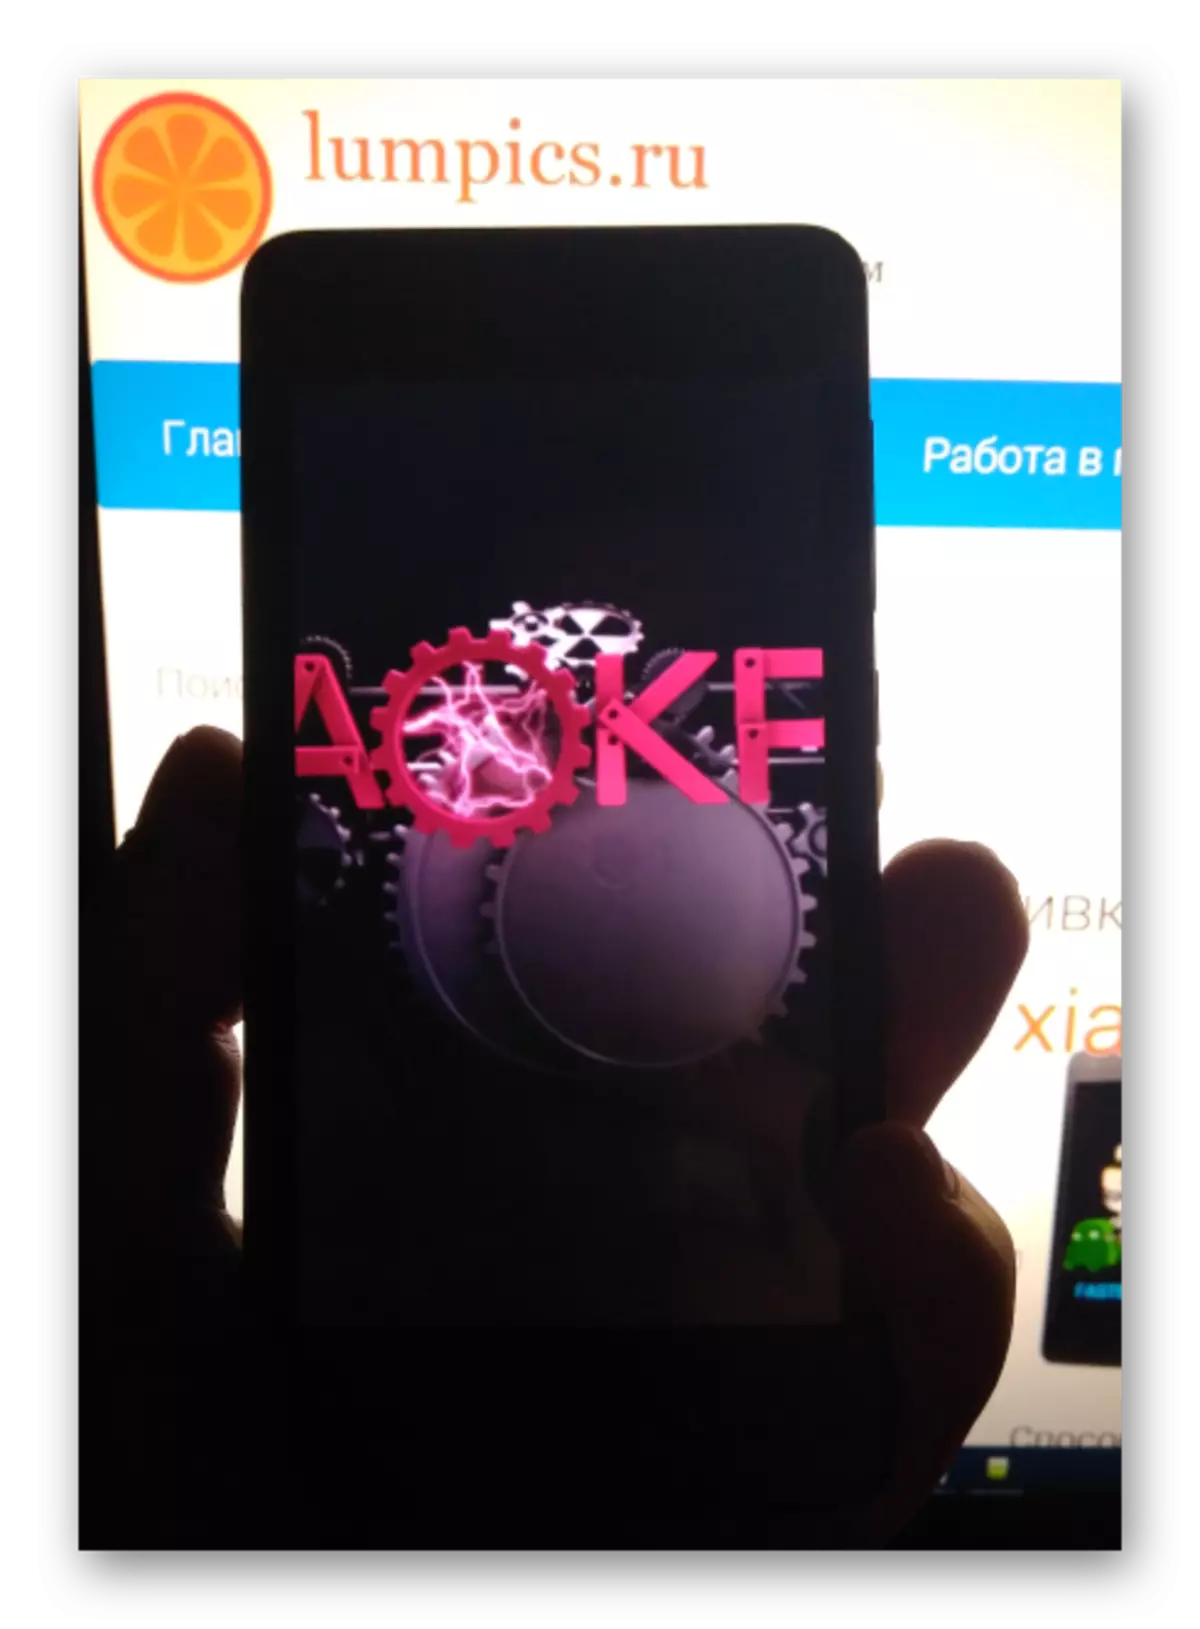 సంస్థాపన తర్వాత Android 6.0 ఆధారంగా సుడిగాలి కస్టమ్ AOKP ఫర్మ్వేర్ను ఎక్స్ప్రెస్ చేయండి